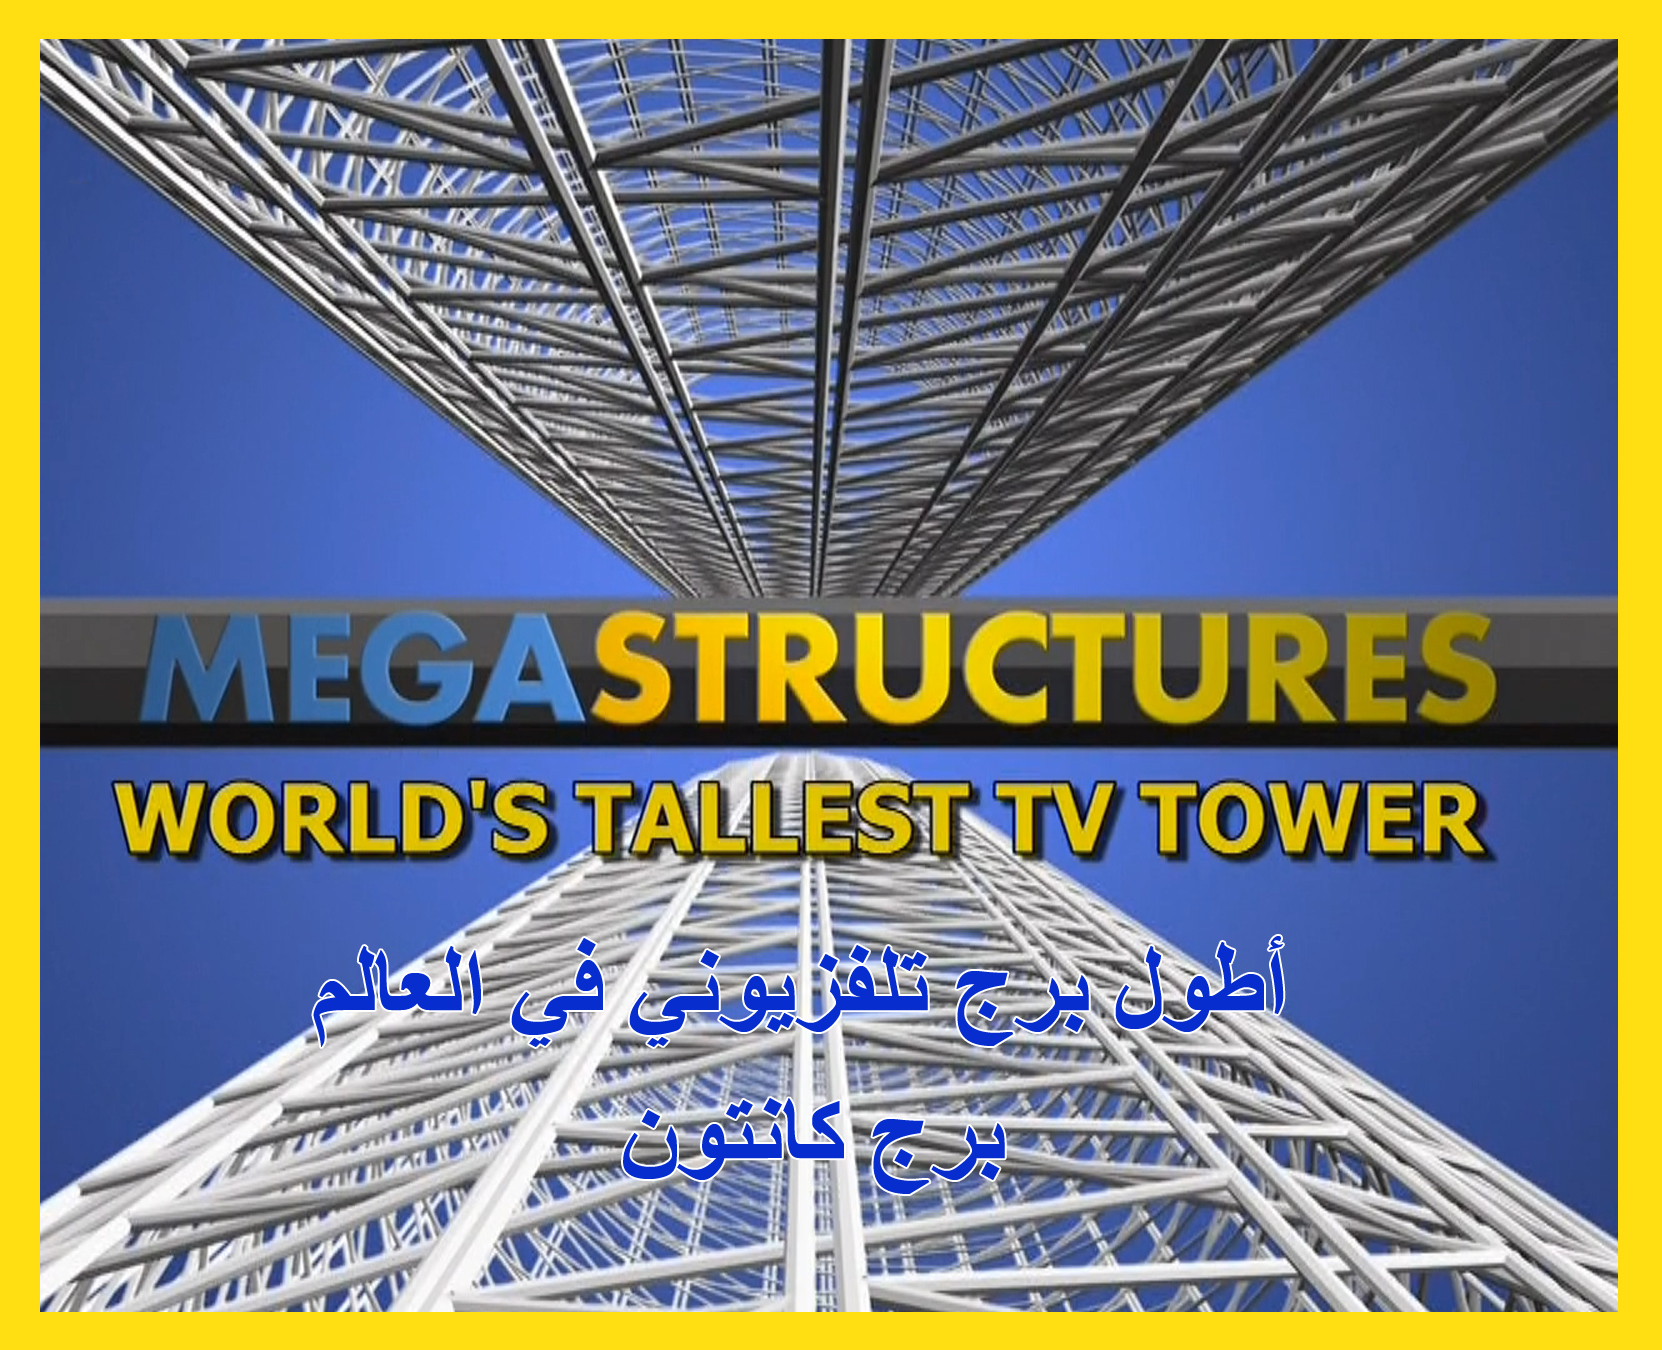 HDTV-1080p | هياكل عملاقة - أطول برج تلفزيوني في العالم -- Seeders: 1 -- Leechers: 0